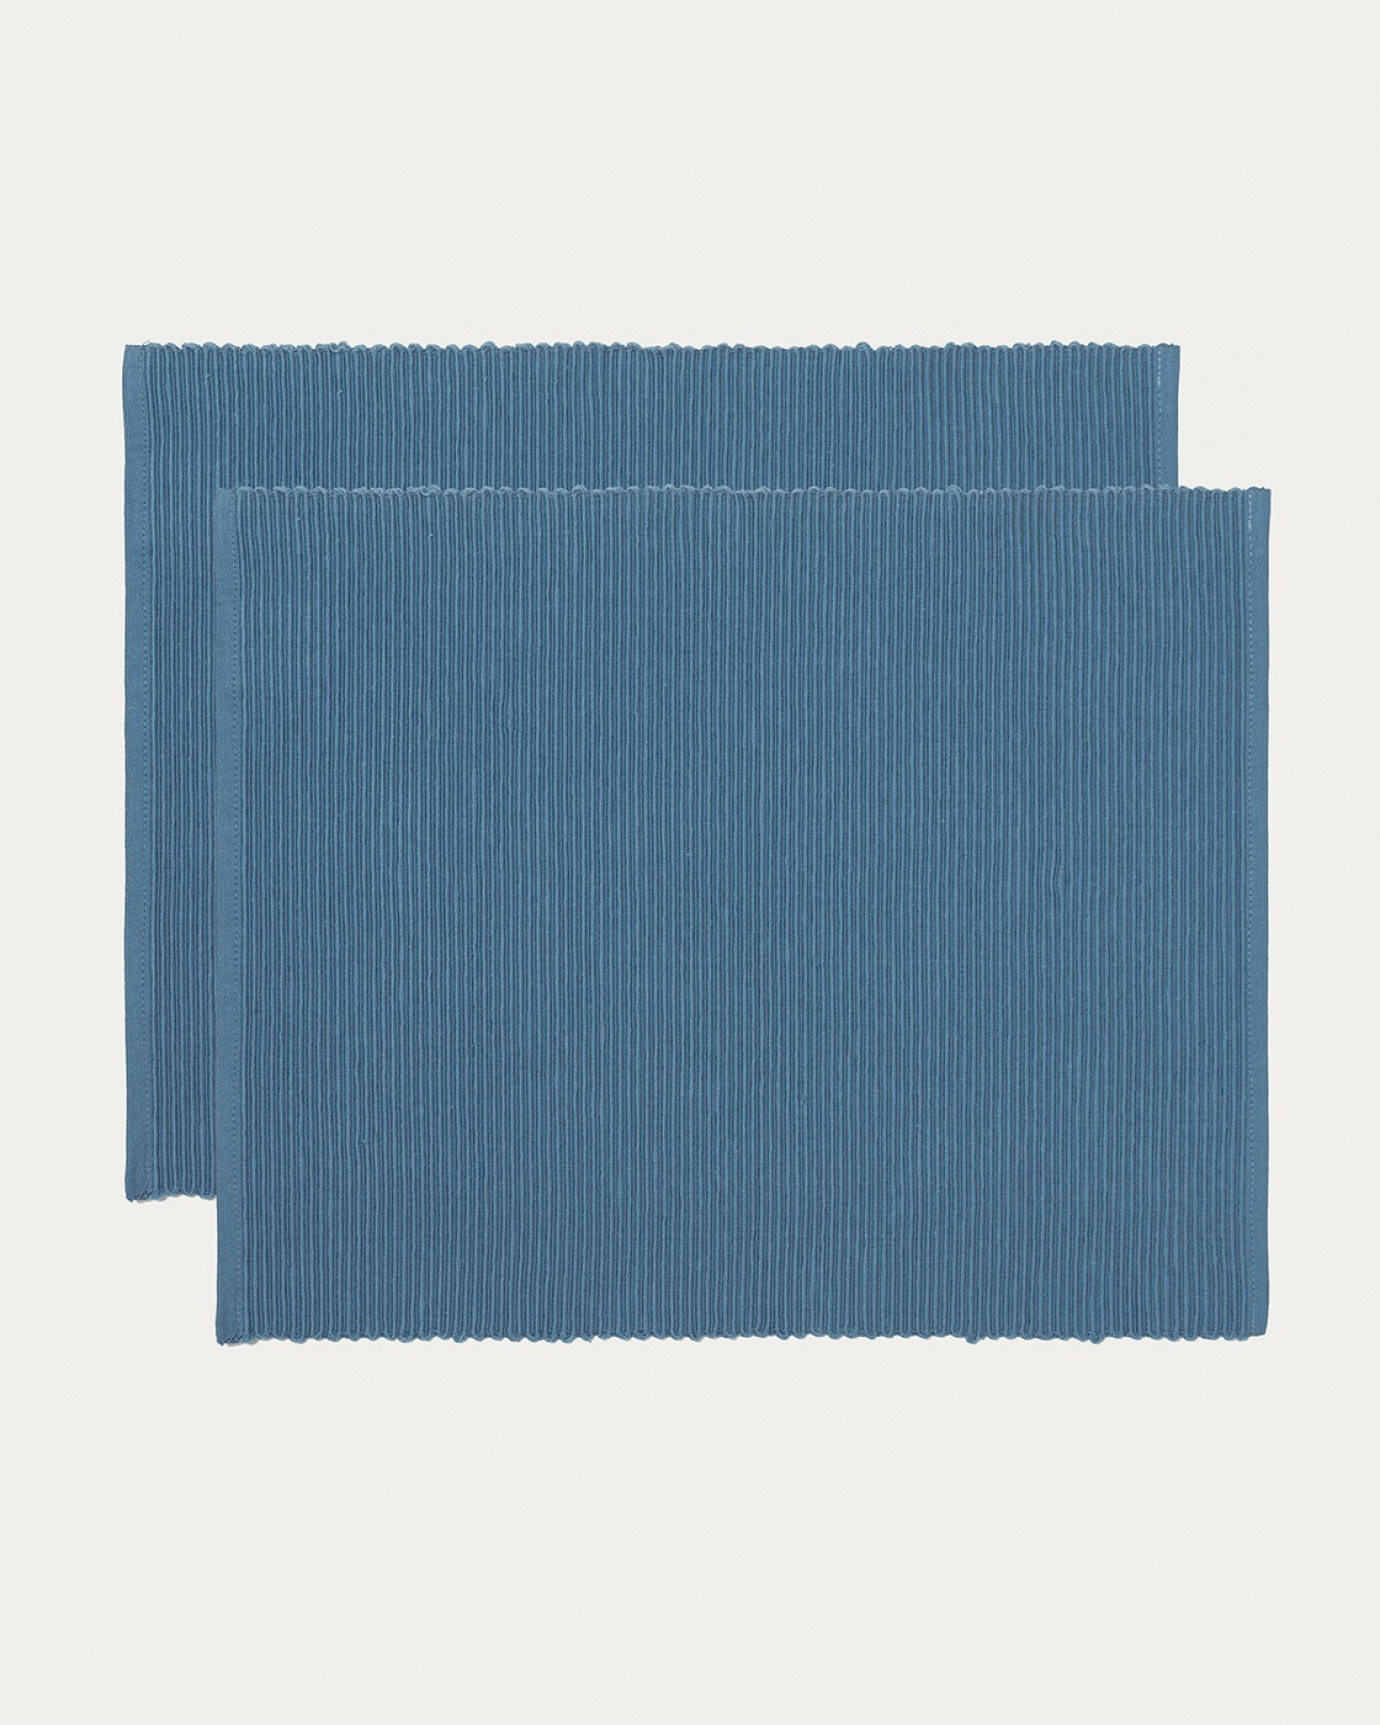 Image du produit set de table UNI bleu ocean en coton doux de qualité côtelée de LINUM DESIGN. Taille 35 x 46 cm et vendu en lot de 2.